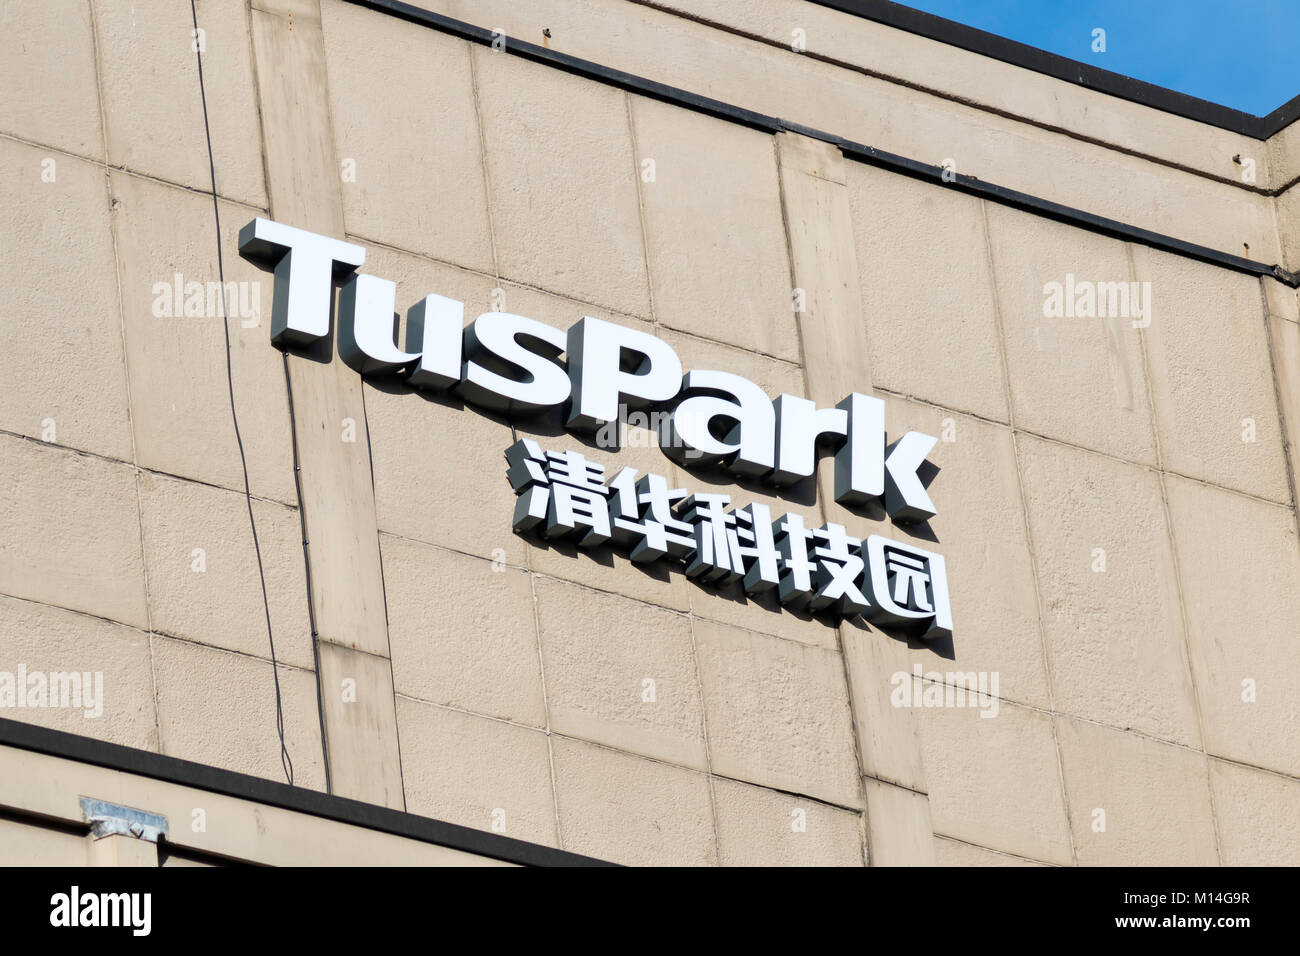 Cartello fuori i cinesi sponsorizzato Tuspark business innovation centre di Newcastle upon Tyne, Inghilterra Foto Stock